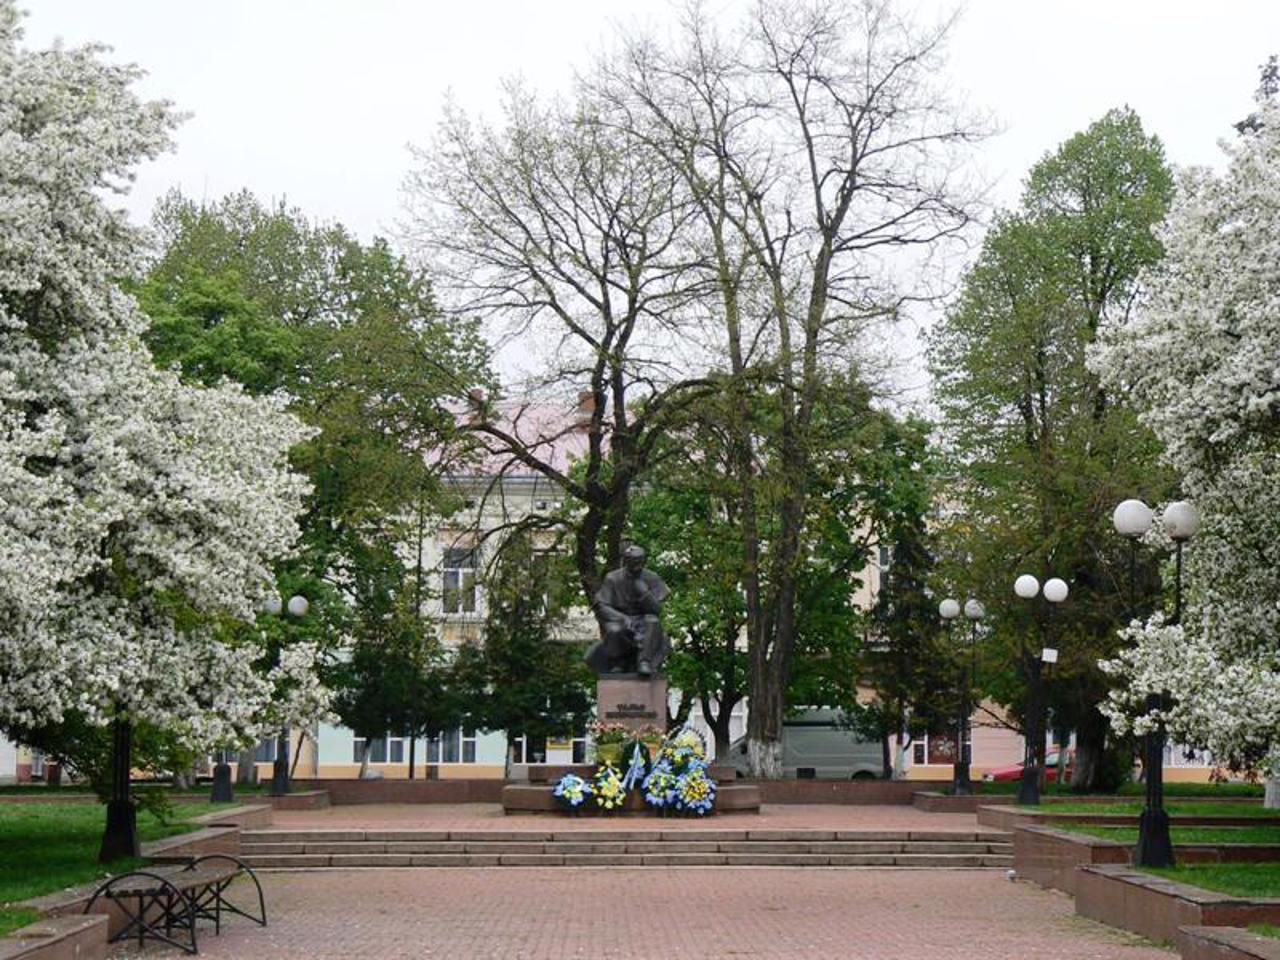 Vidrodzhennya Square, Kolomyia